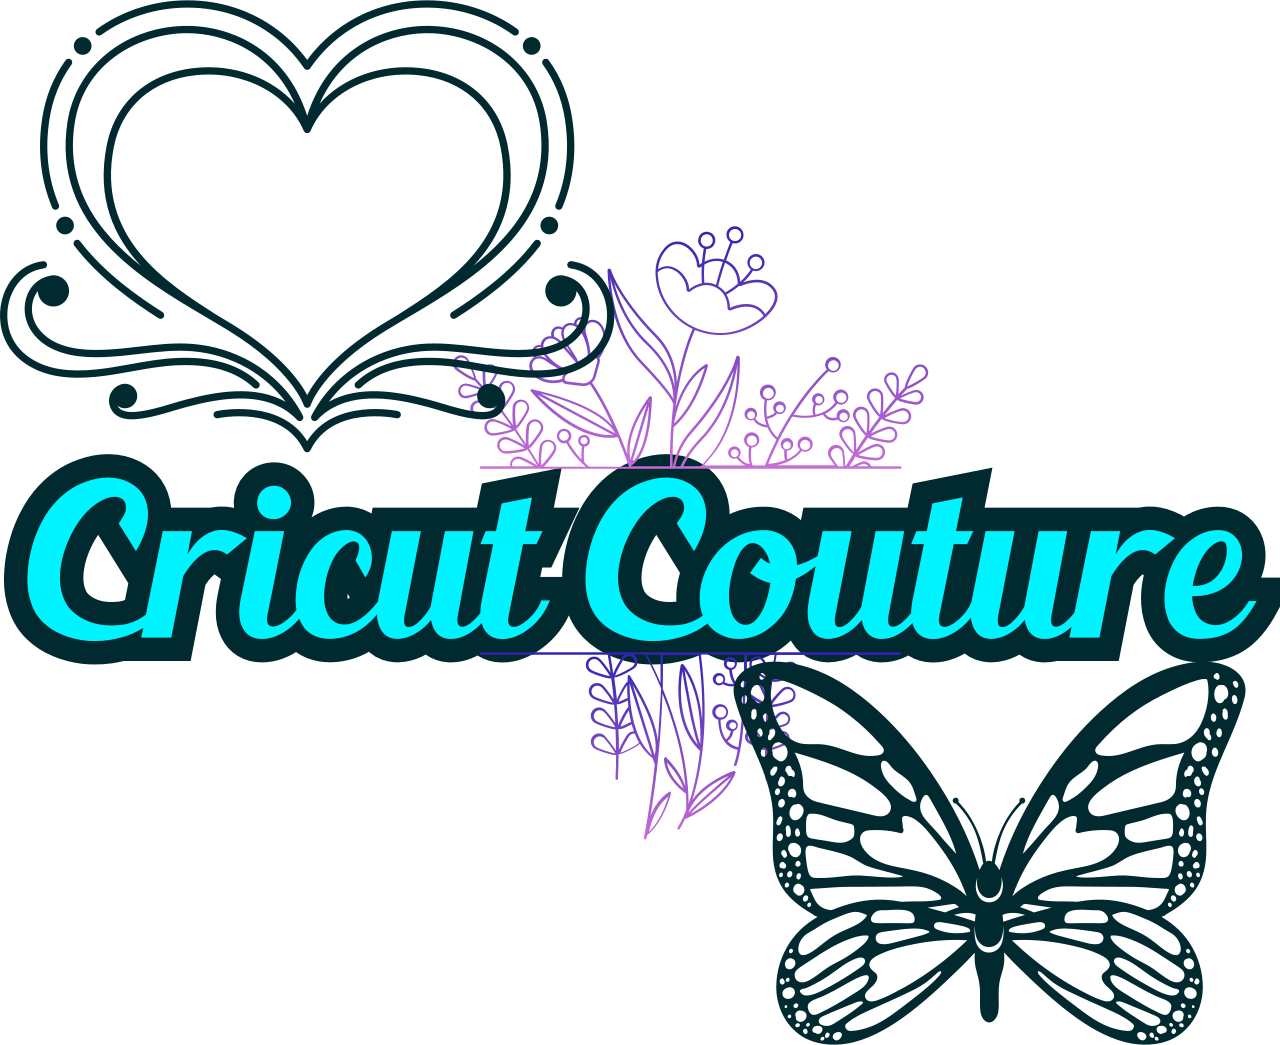 Cricut Couture's logo